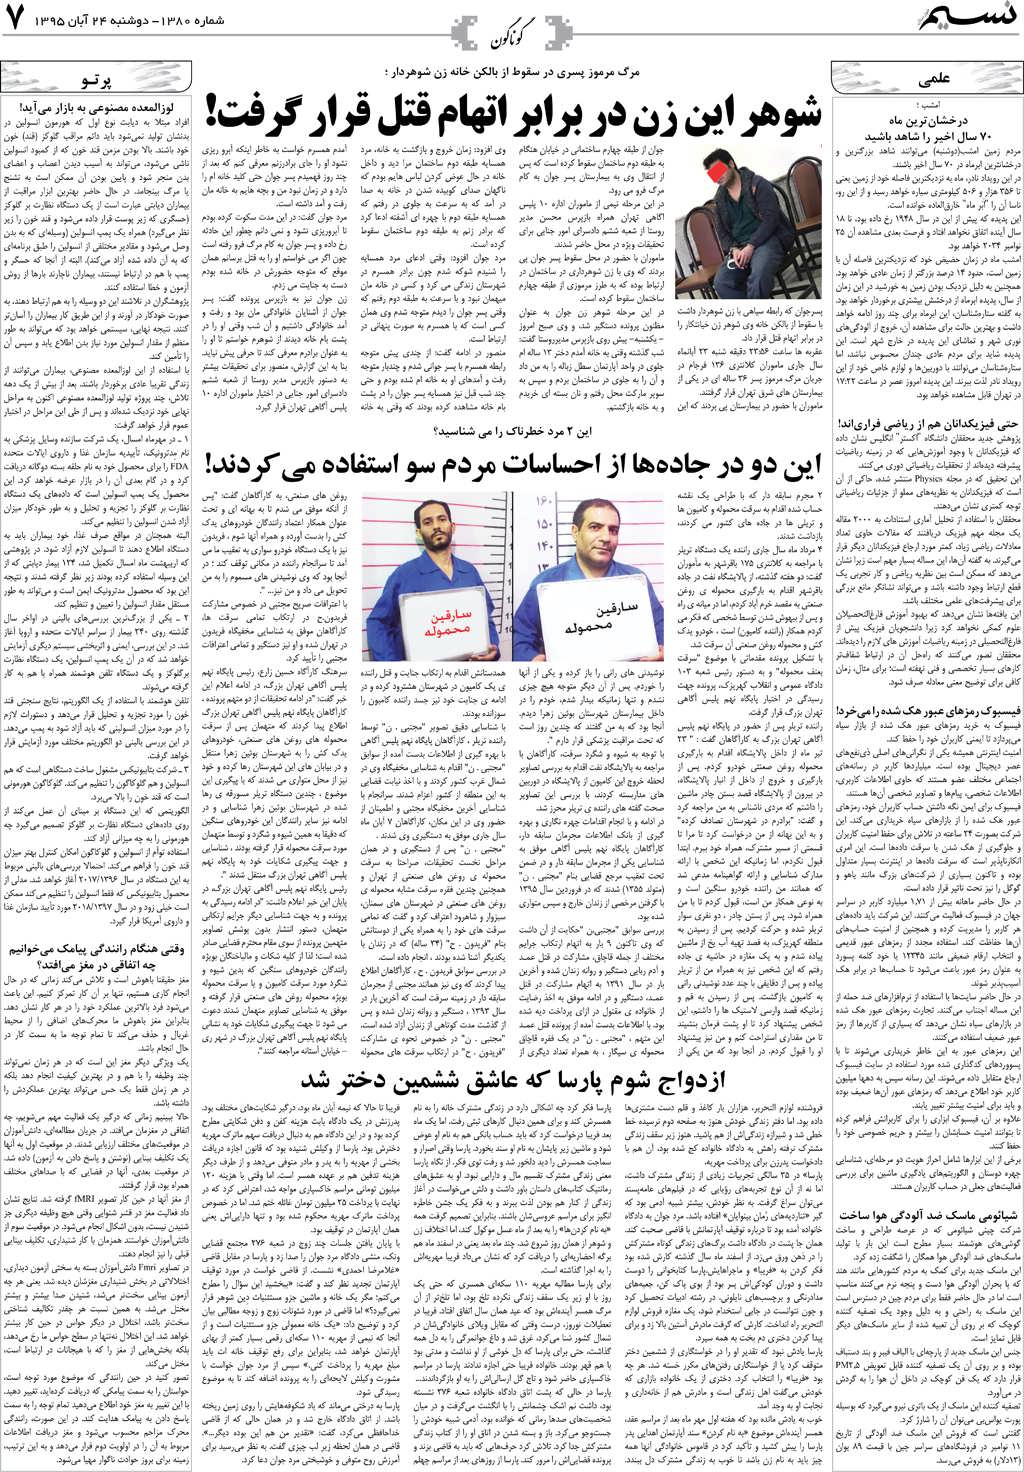 صفحه گوناگون روزنامه نسیم شماره 1380